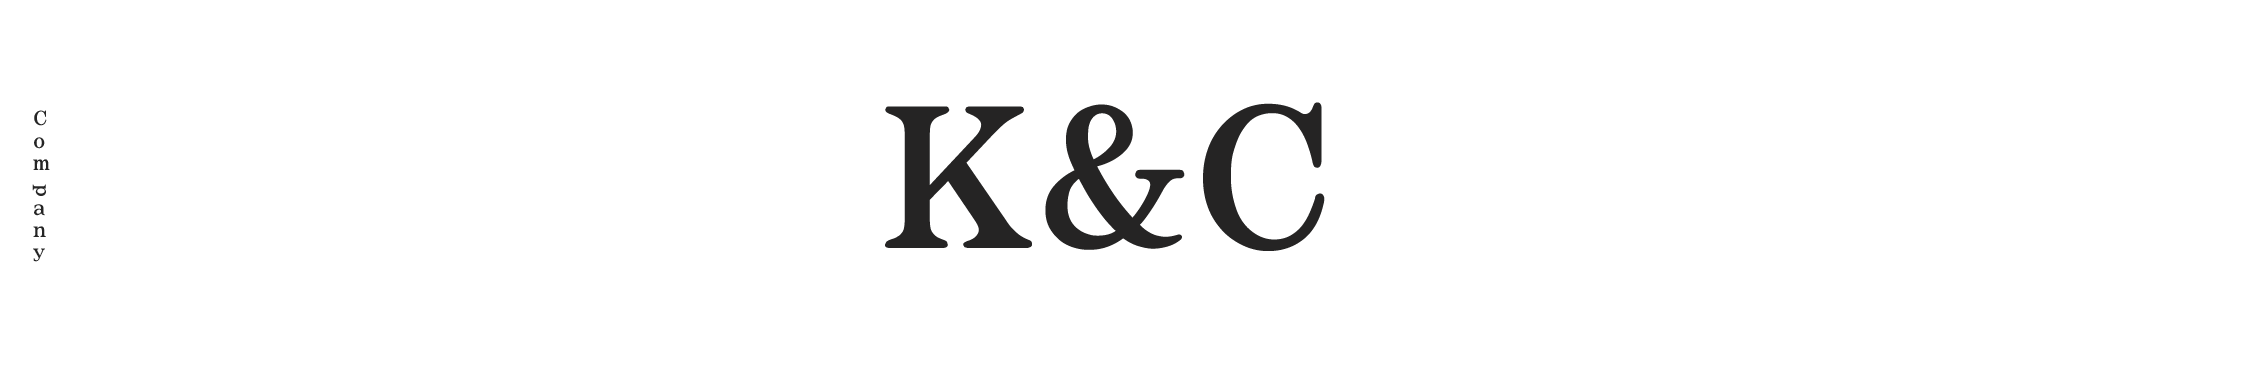 K&C Company